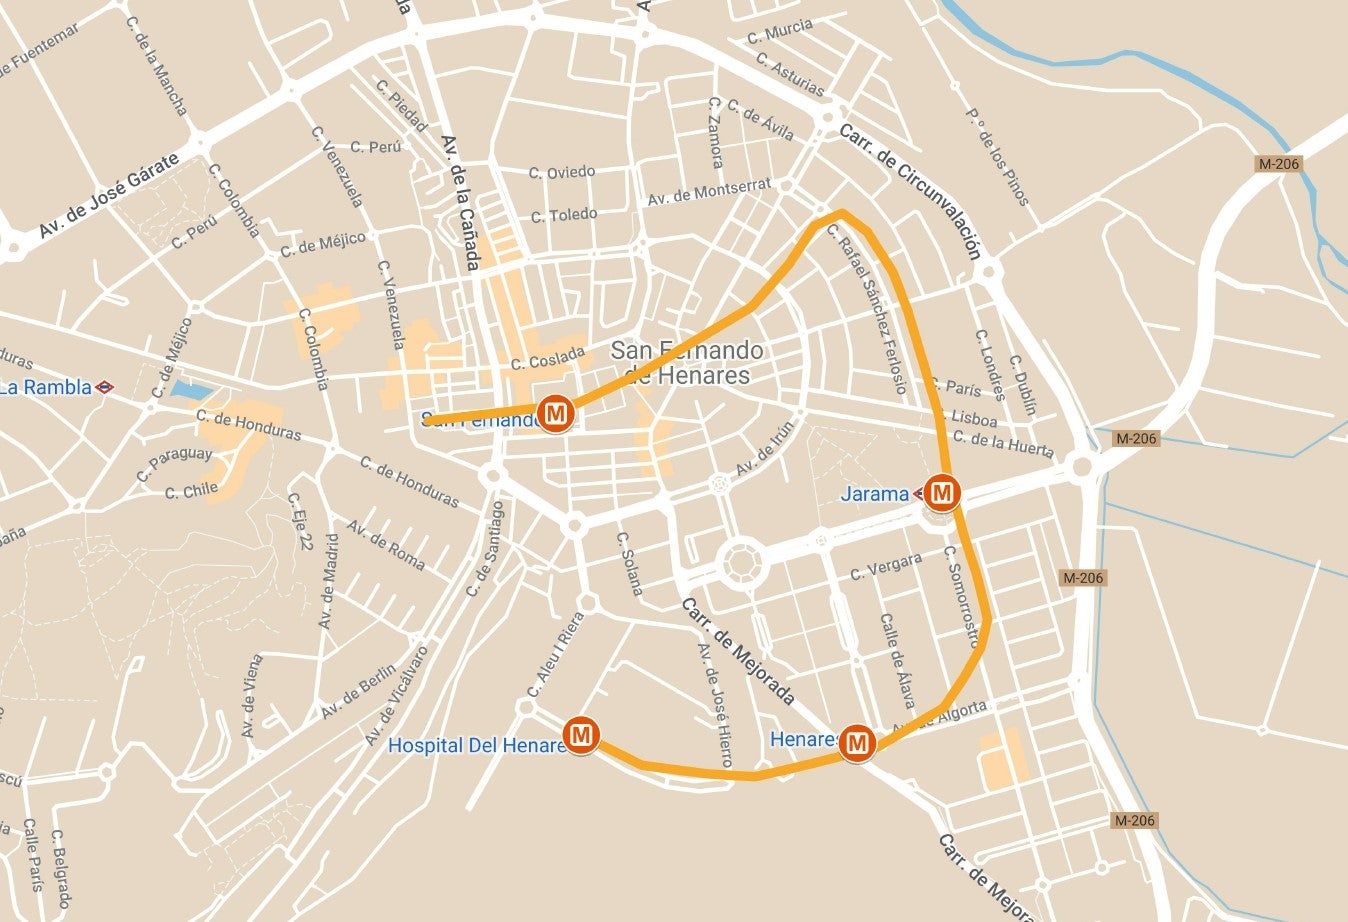 Mapa de San Fernando de Henares y la línea 7b del Metro de Madrid